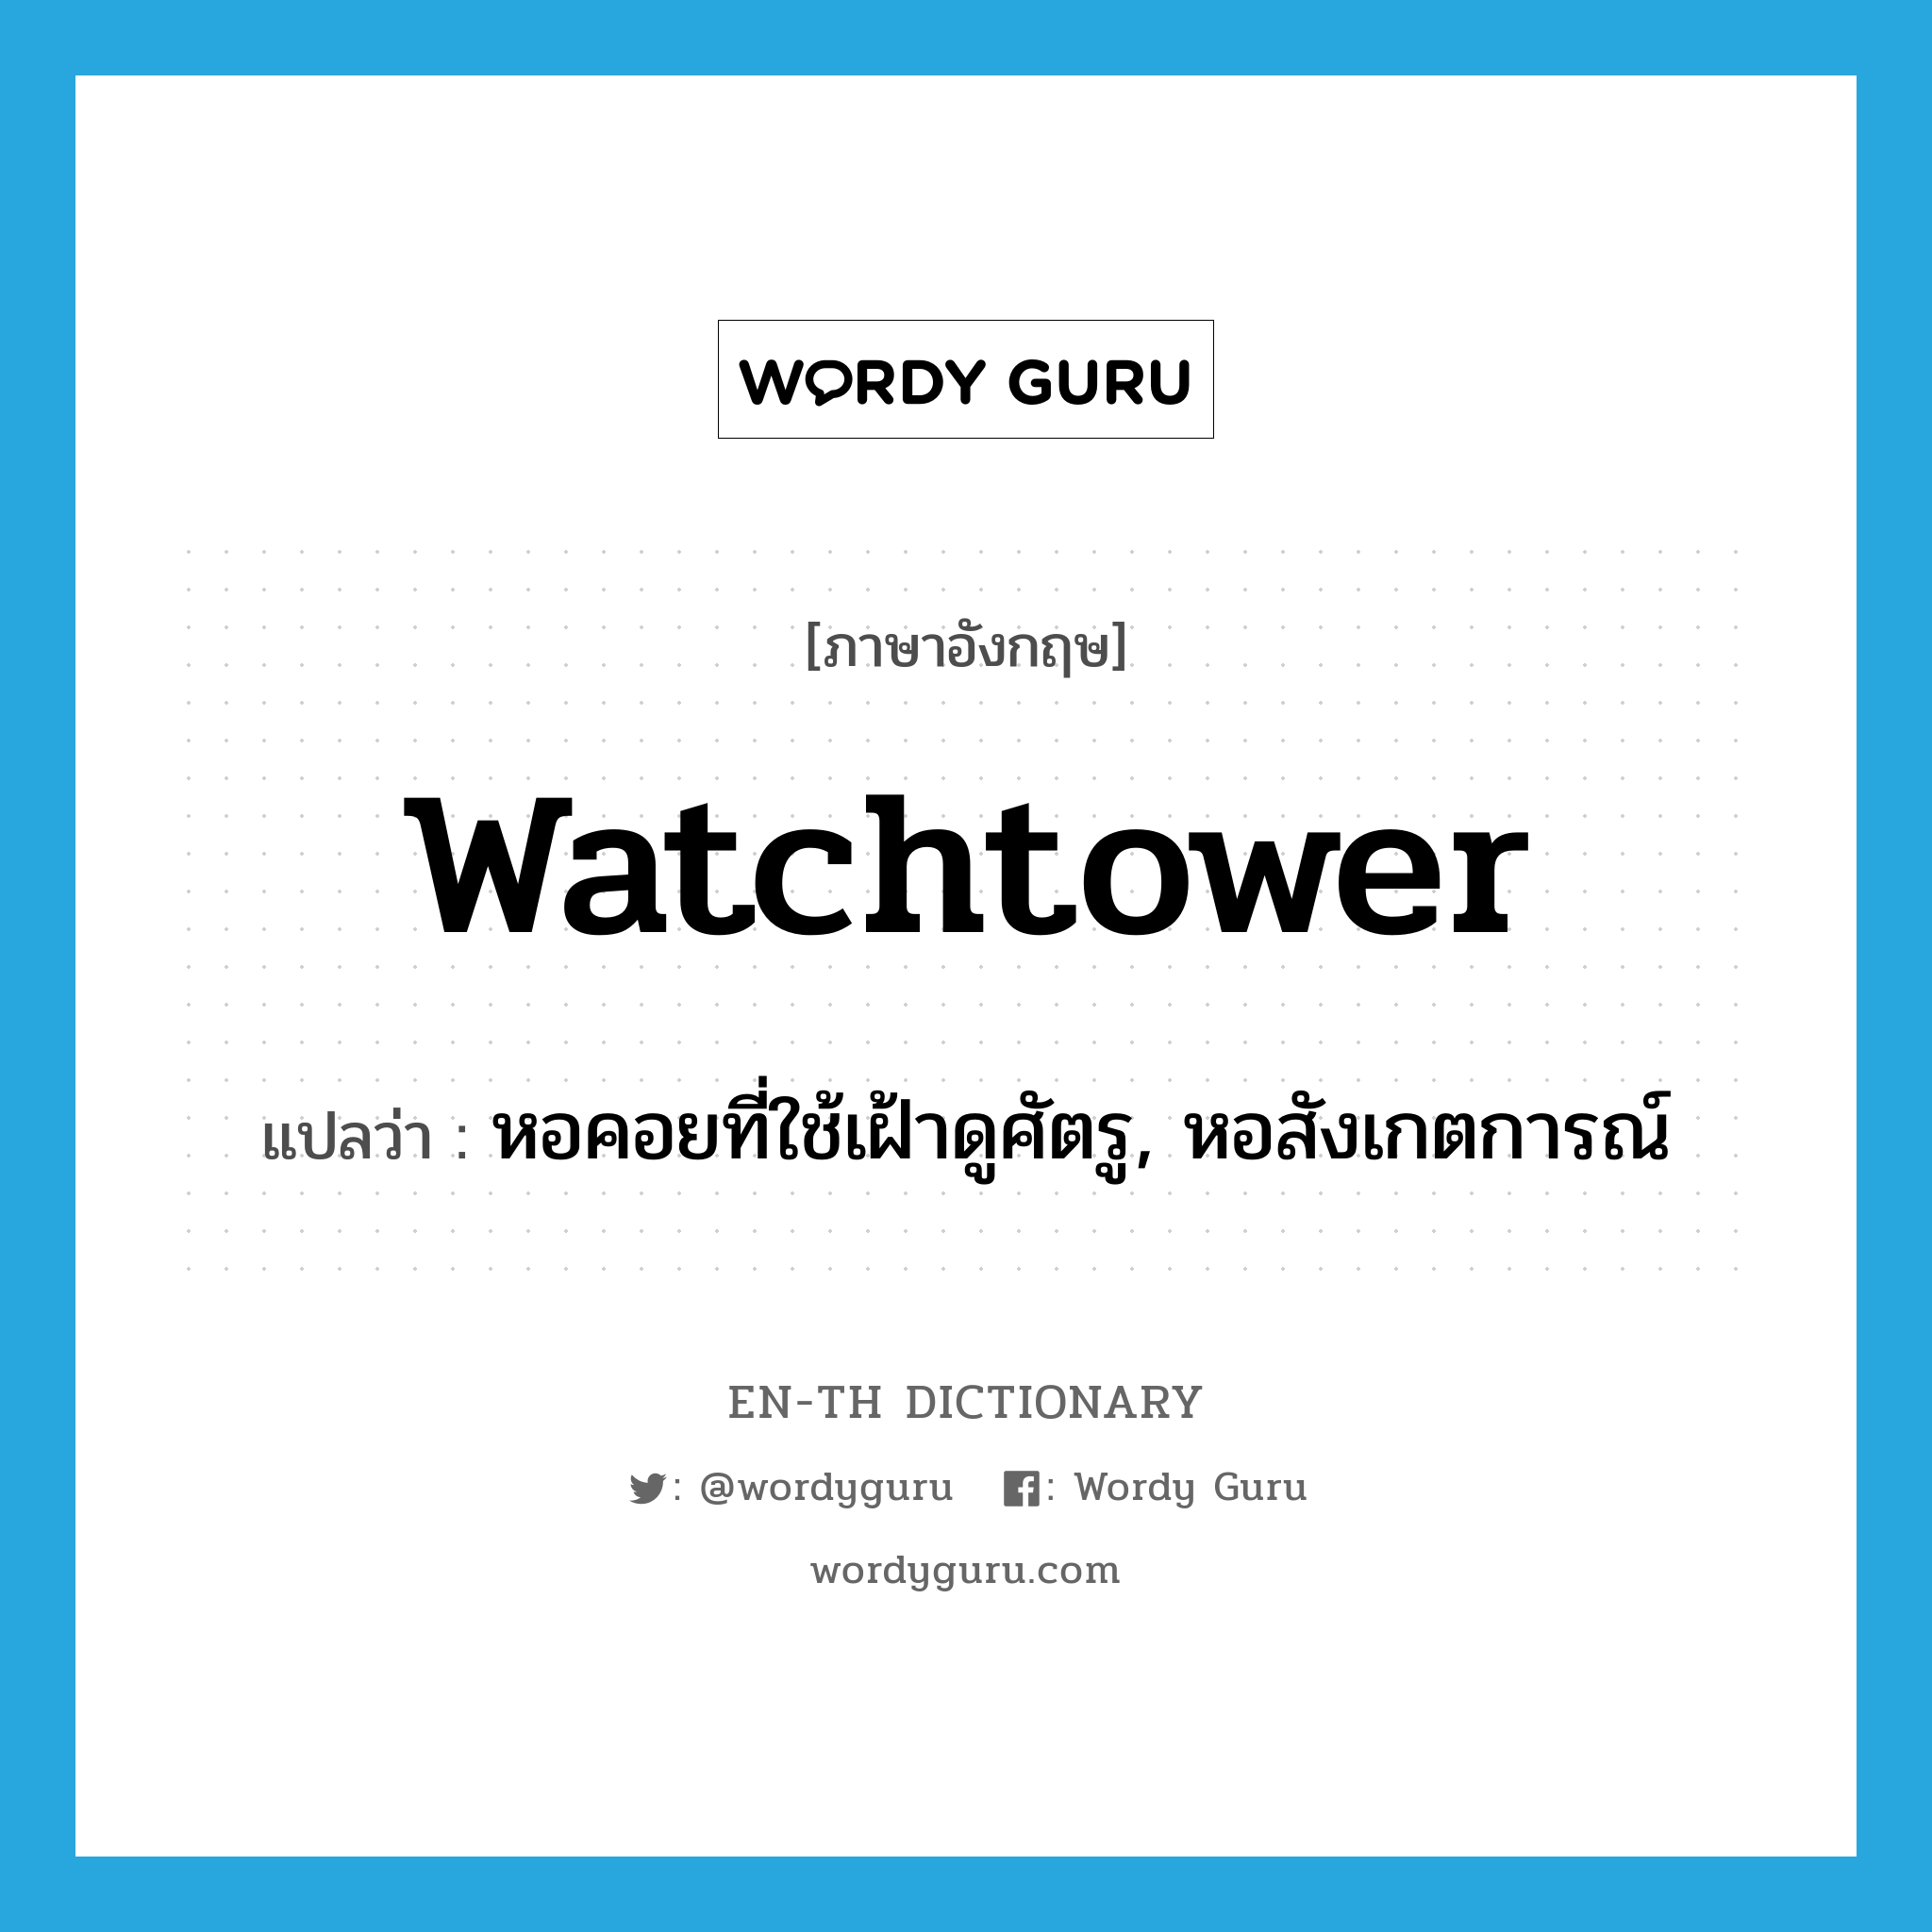 หอคอยที่ใช้เฝ้าดูศัตรู, หอสังเกตการณ์ ภาษาอังกฤษ?, คำศัพท์ภาษาอังกฤษ หอคอยที่ใช้เฝ้าดูศัตรู, หอสังเกตการณ์ แปลว่า watchtower ประเภท N หมวด N